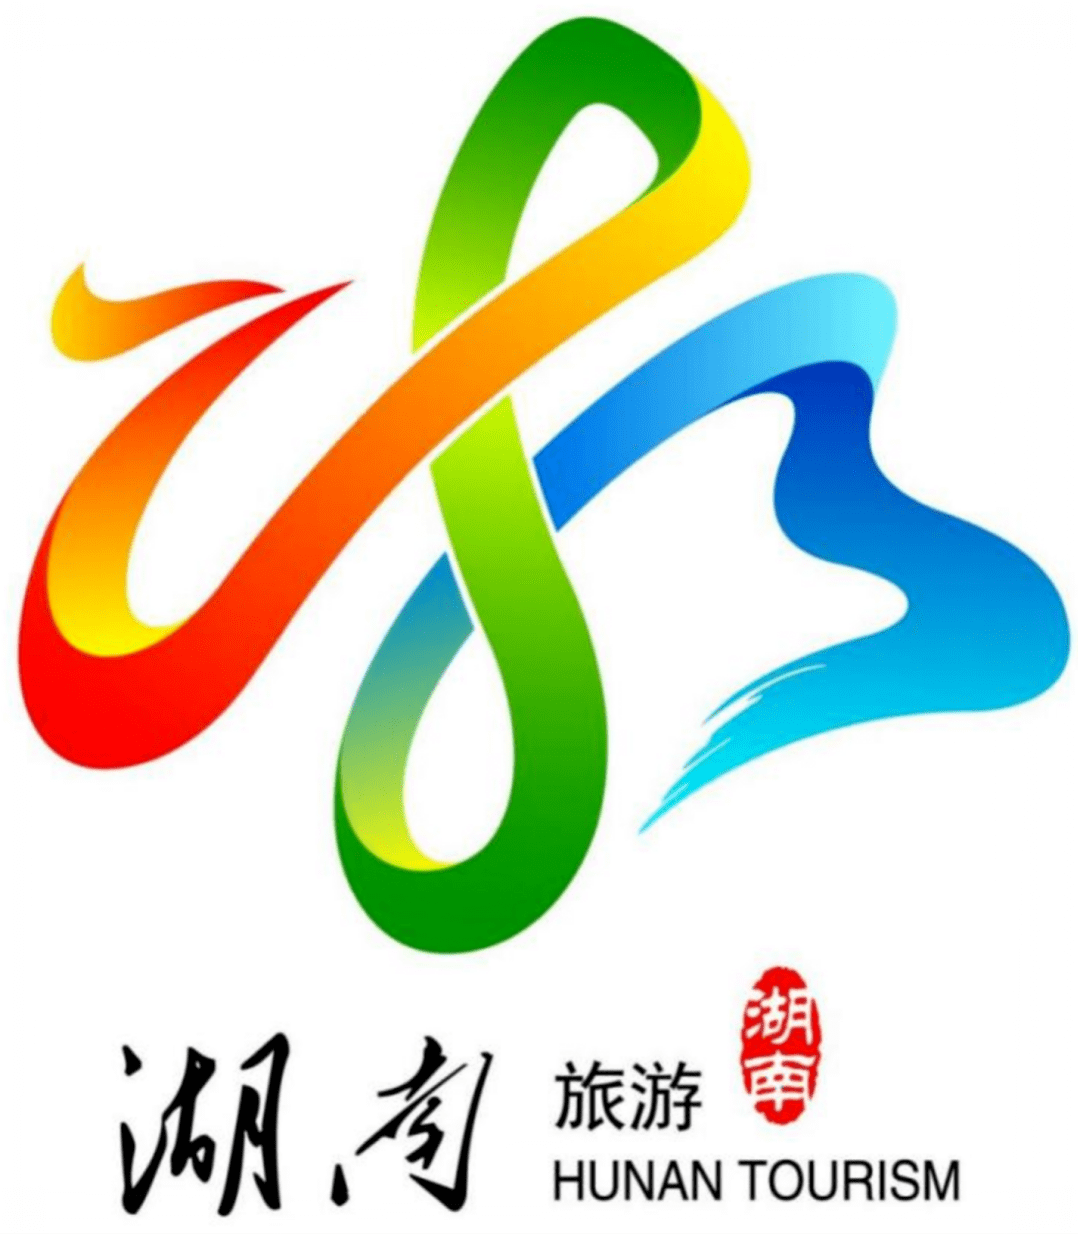 【公告】湖南旅游宣传口号和旅游形象标识(logo)征集评审结果公示